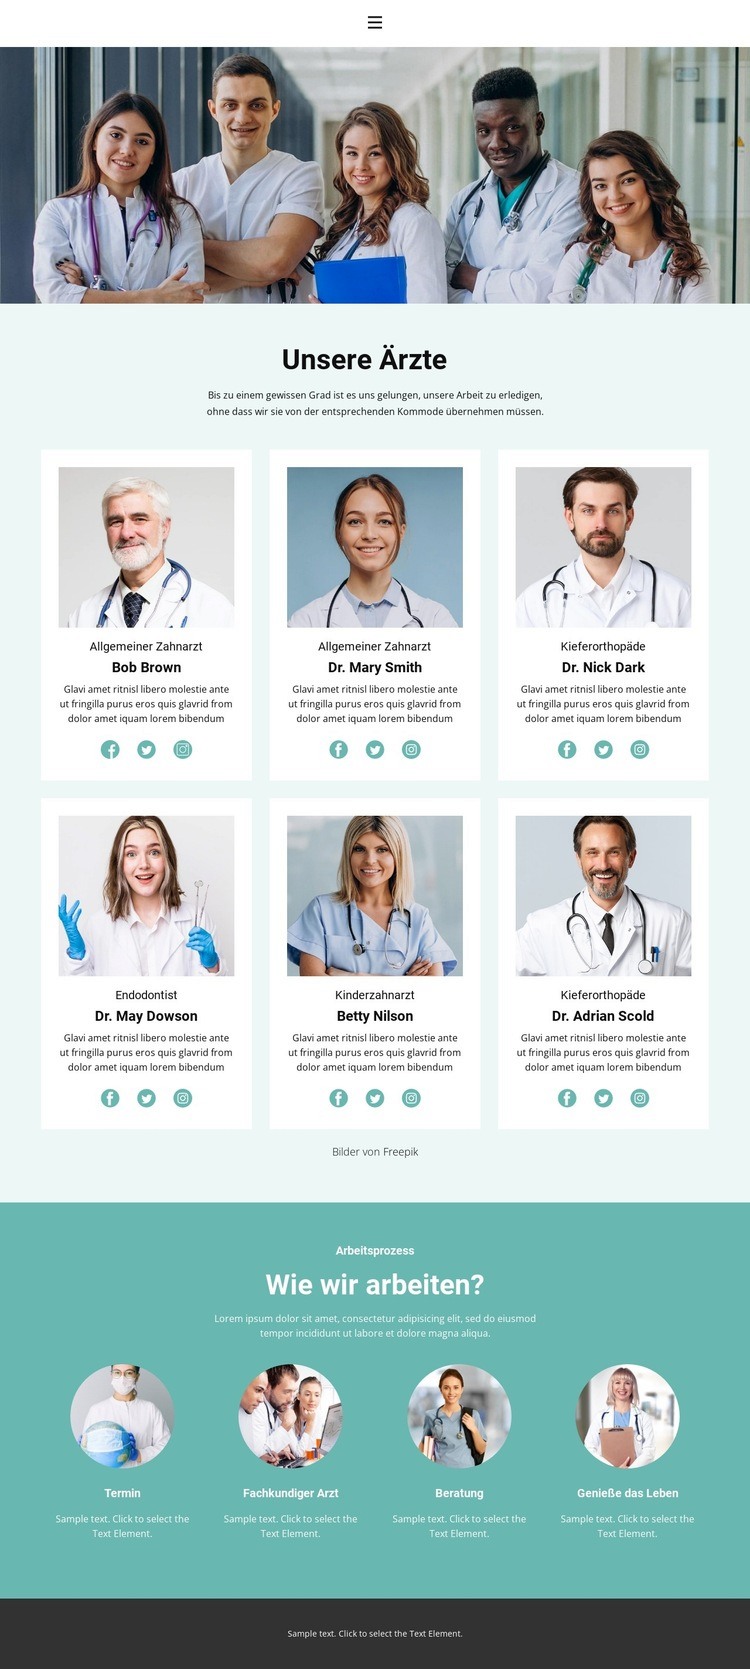 Die besten medizinischen Fachkräfte HTML5-Vorlage